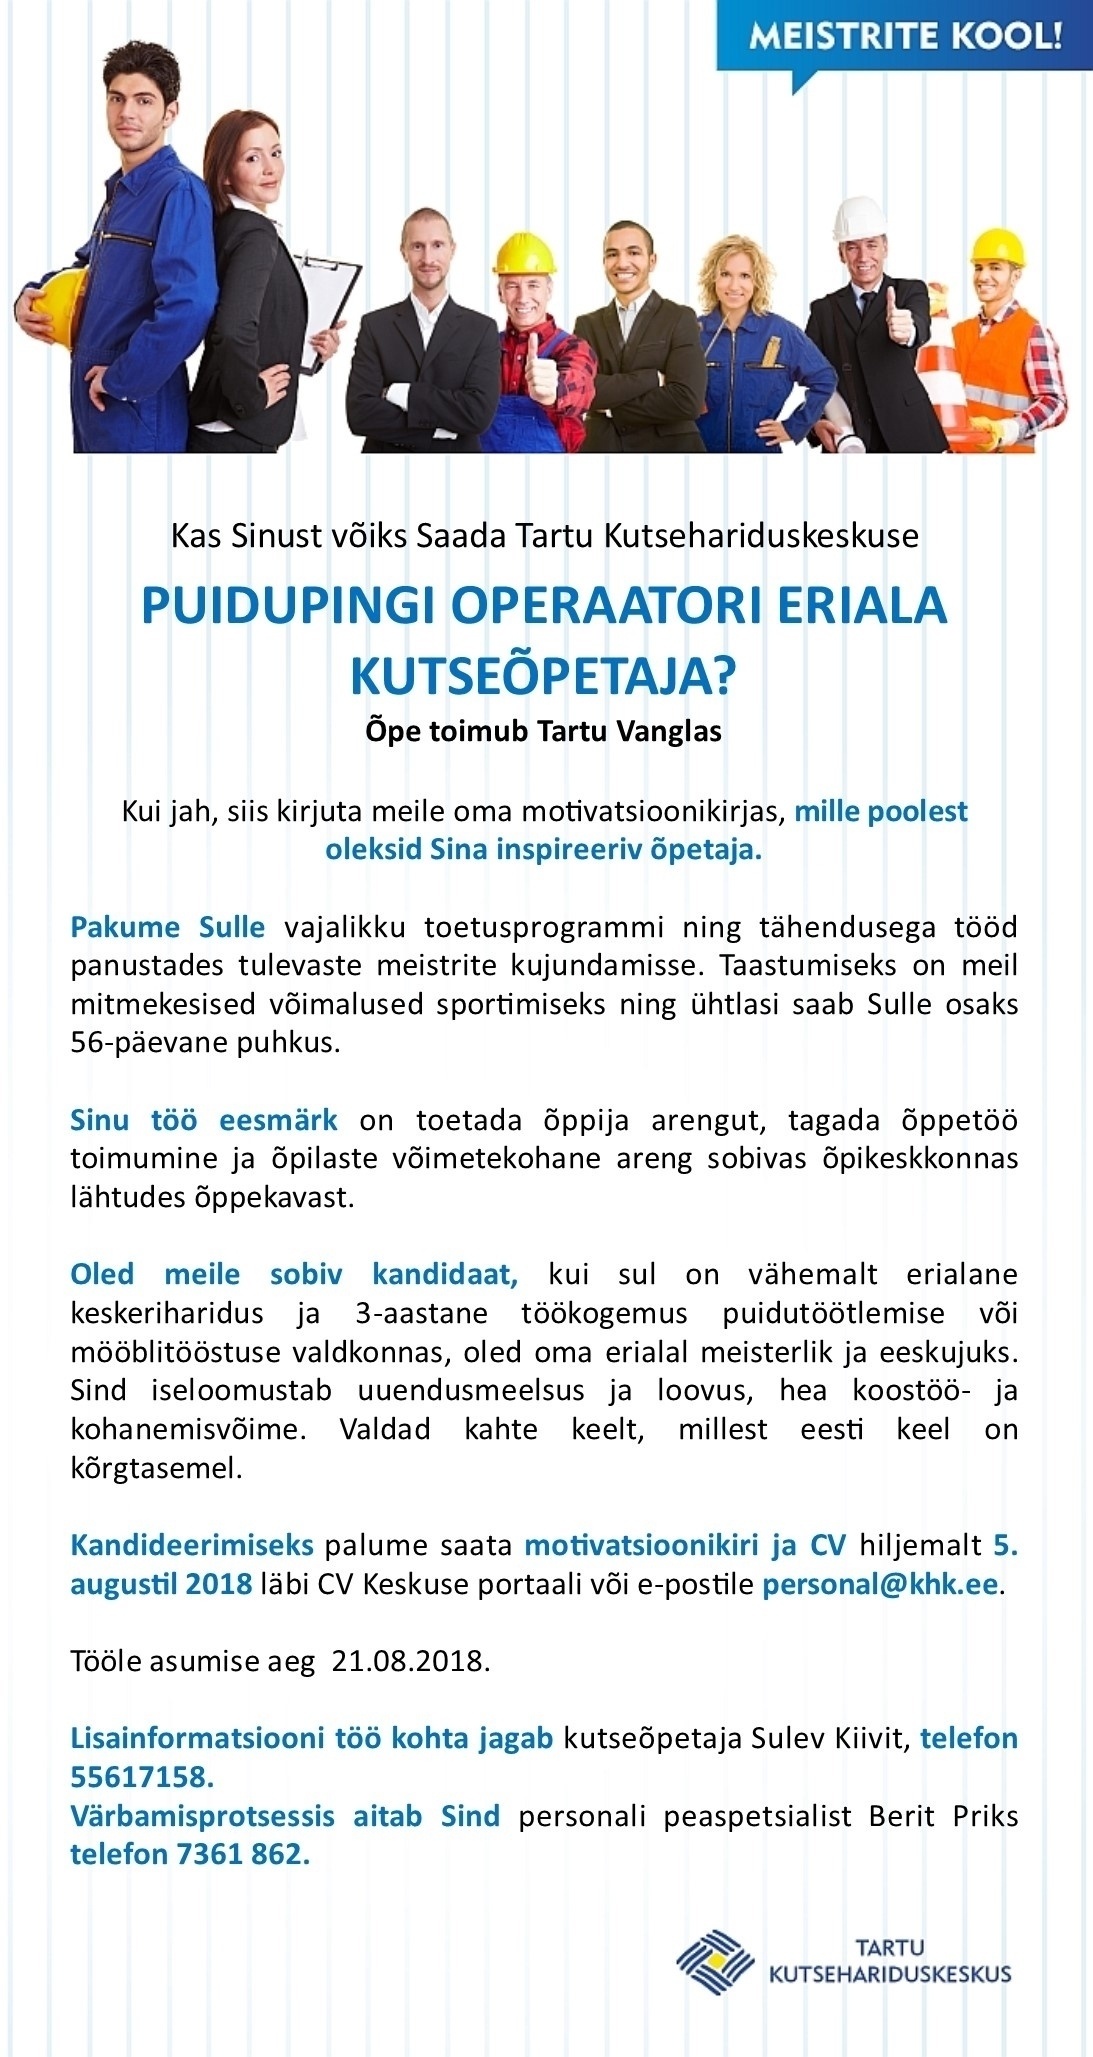 Tartu Kutsehariduskeskus Puidupingi operaatori eriala kutseõpetaja